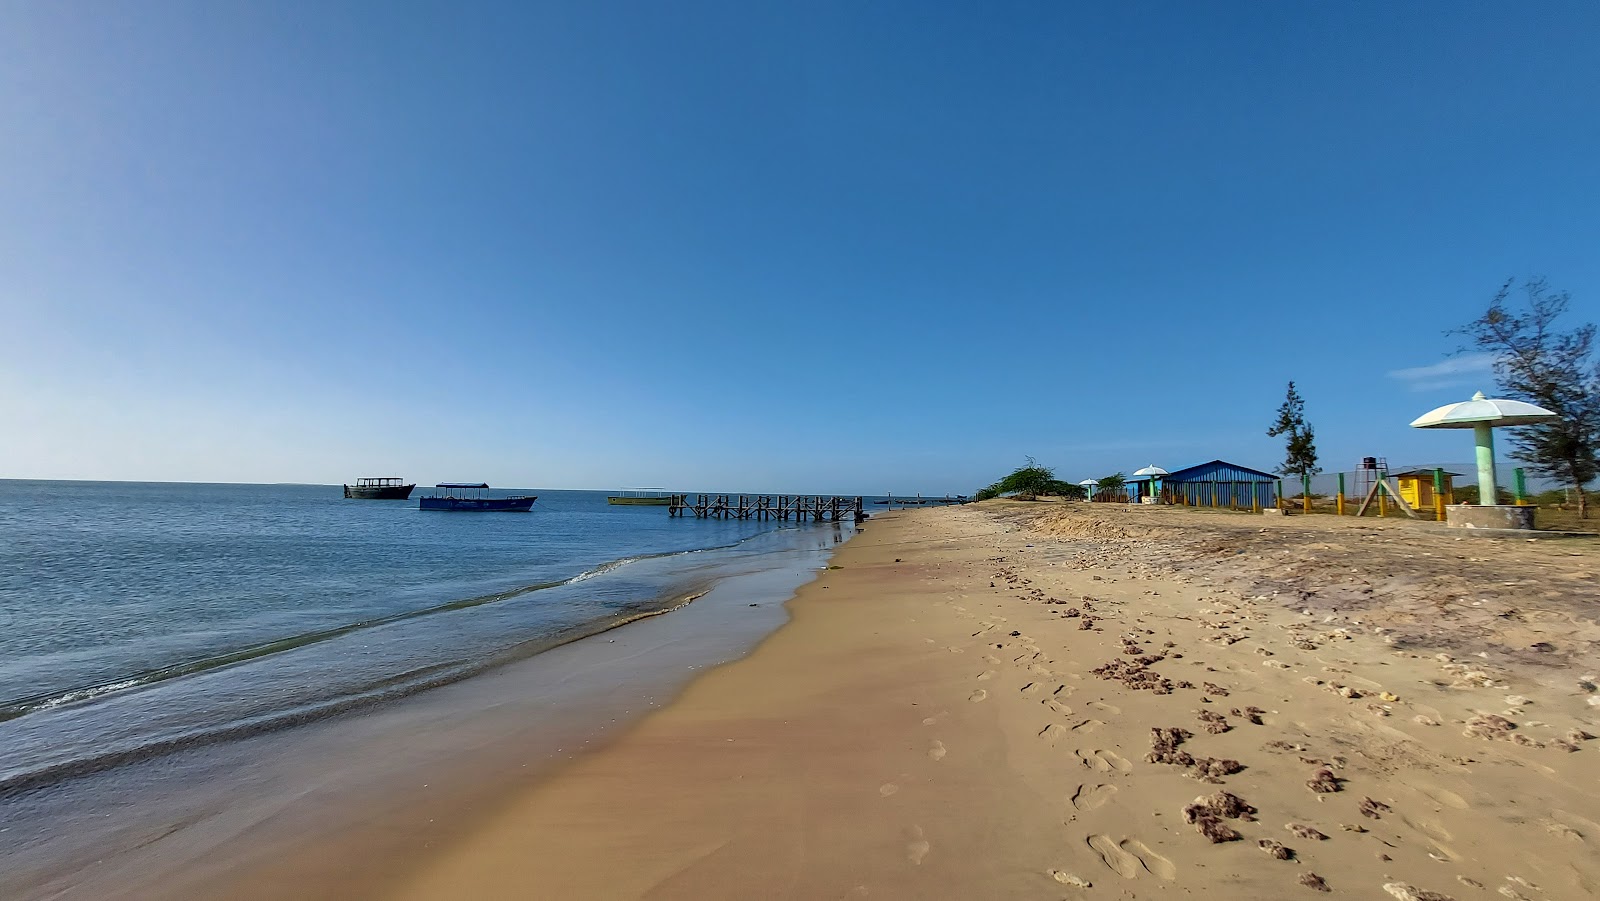 Zdjęcie Tharuvaikulam Beach z powierzchnią jasny piasek